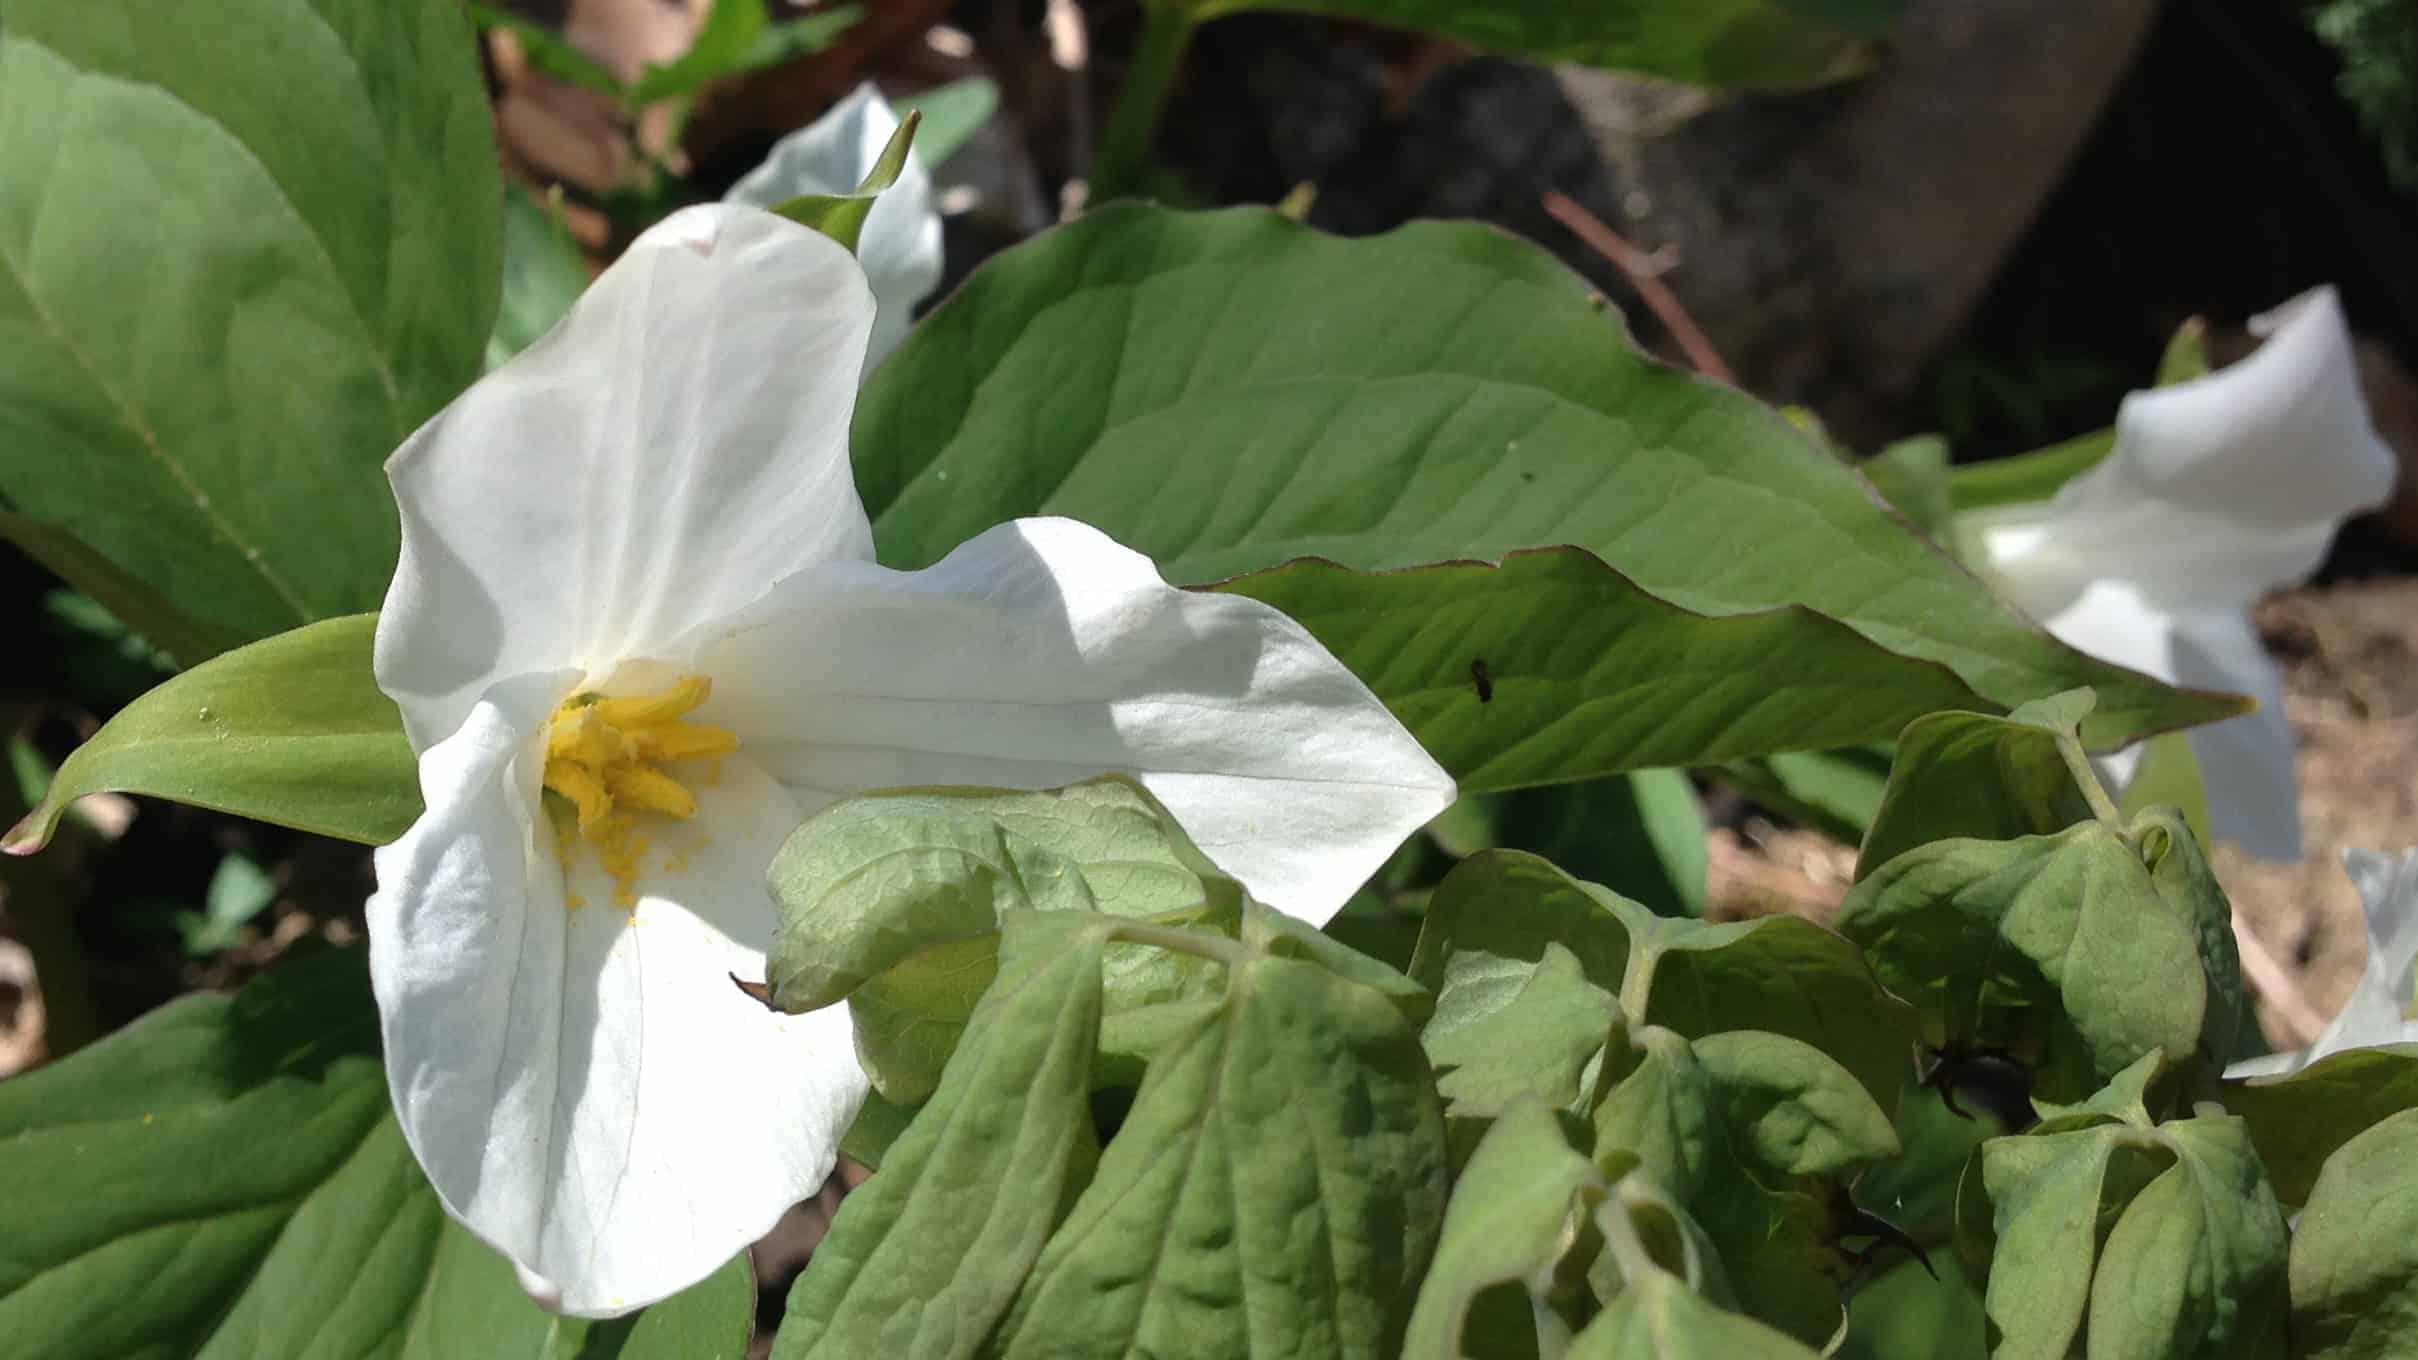 White trillium bloom at Bartholomew's Cobble.